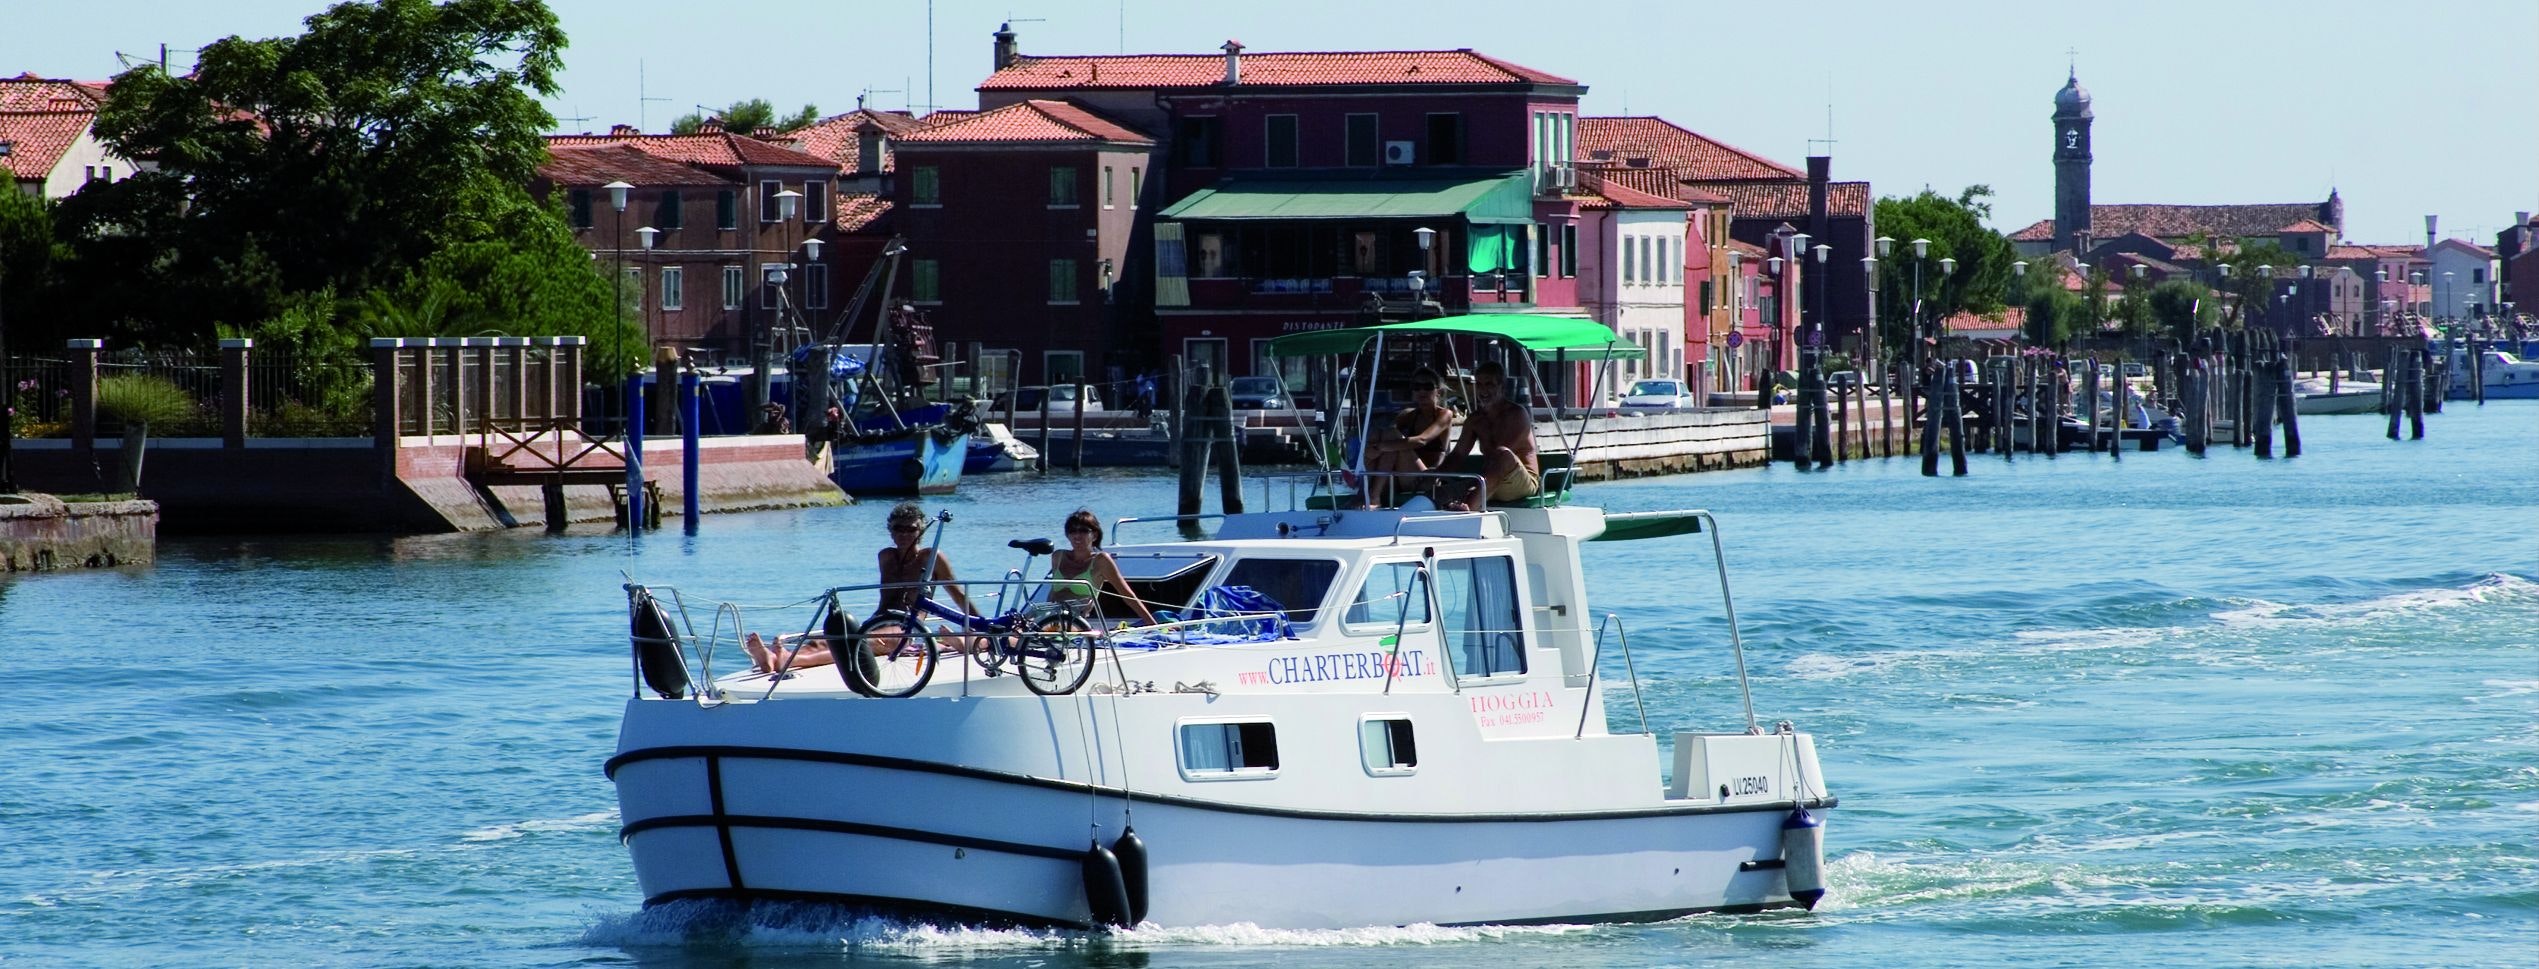 Mensen aan boord van een woonboot in de Venetiaanse Lagune